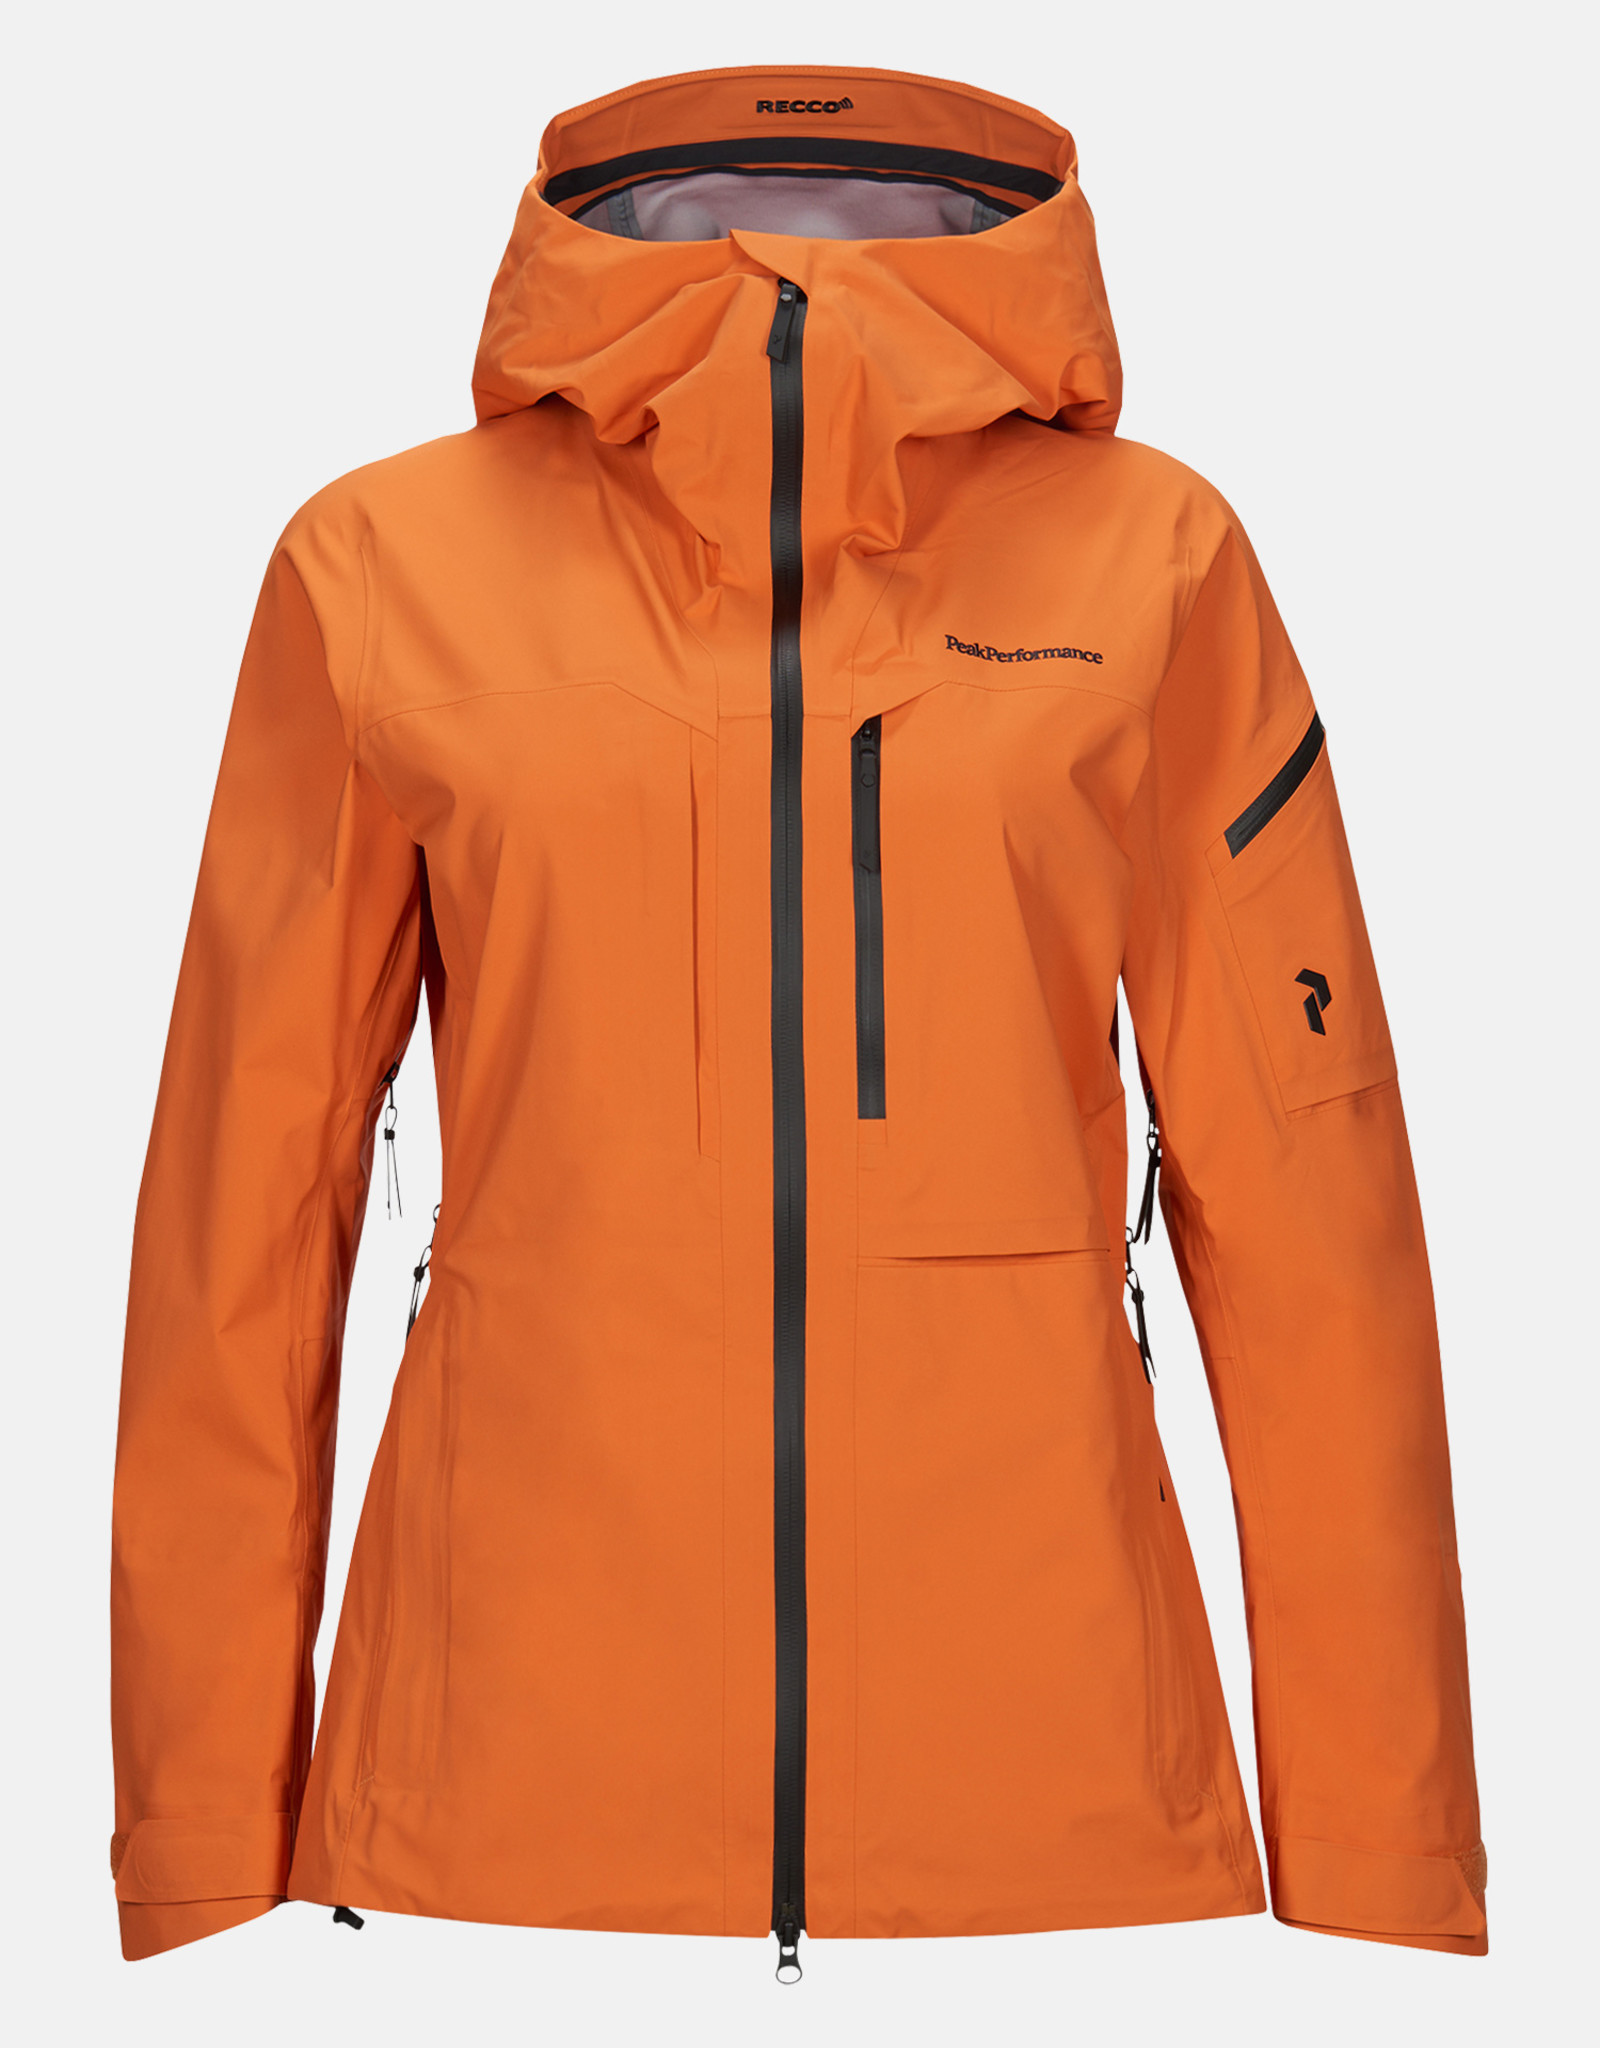 tiyatrocu Zamanında Sıyırmak peak performance orange shell ski jacket -  kirstyrusselldesign.com